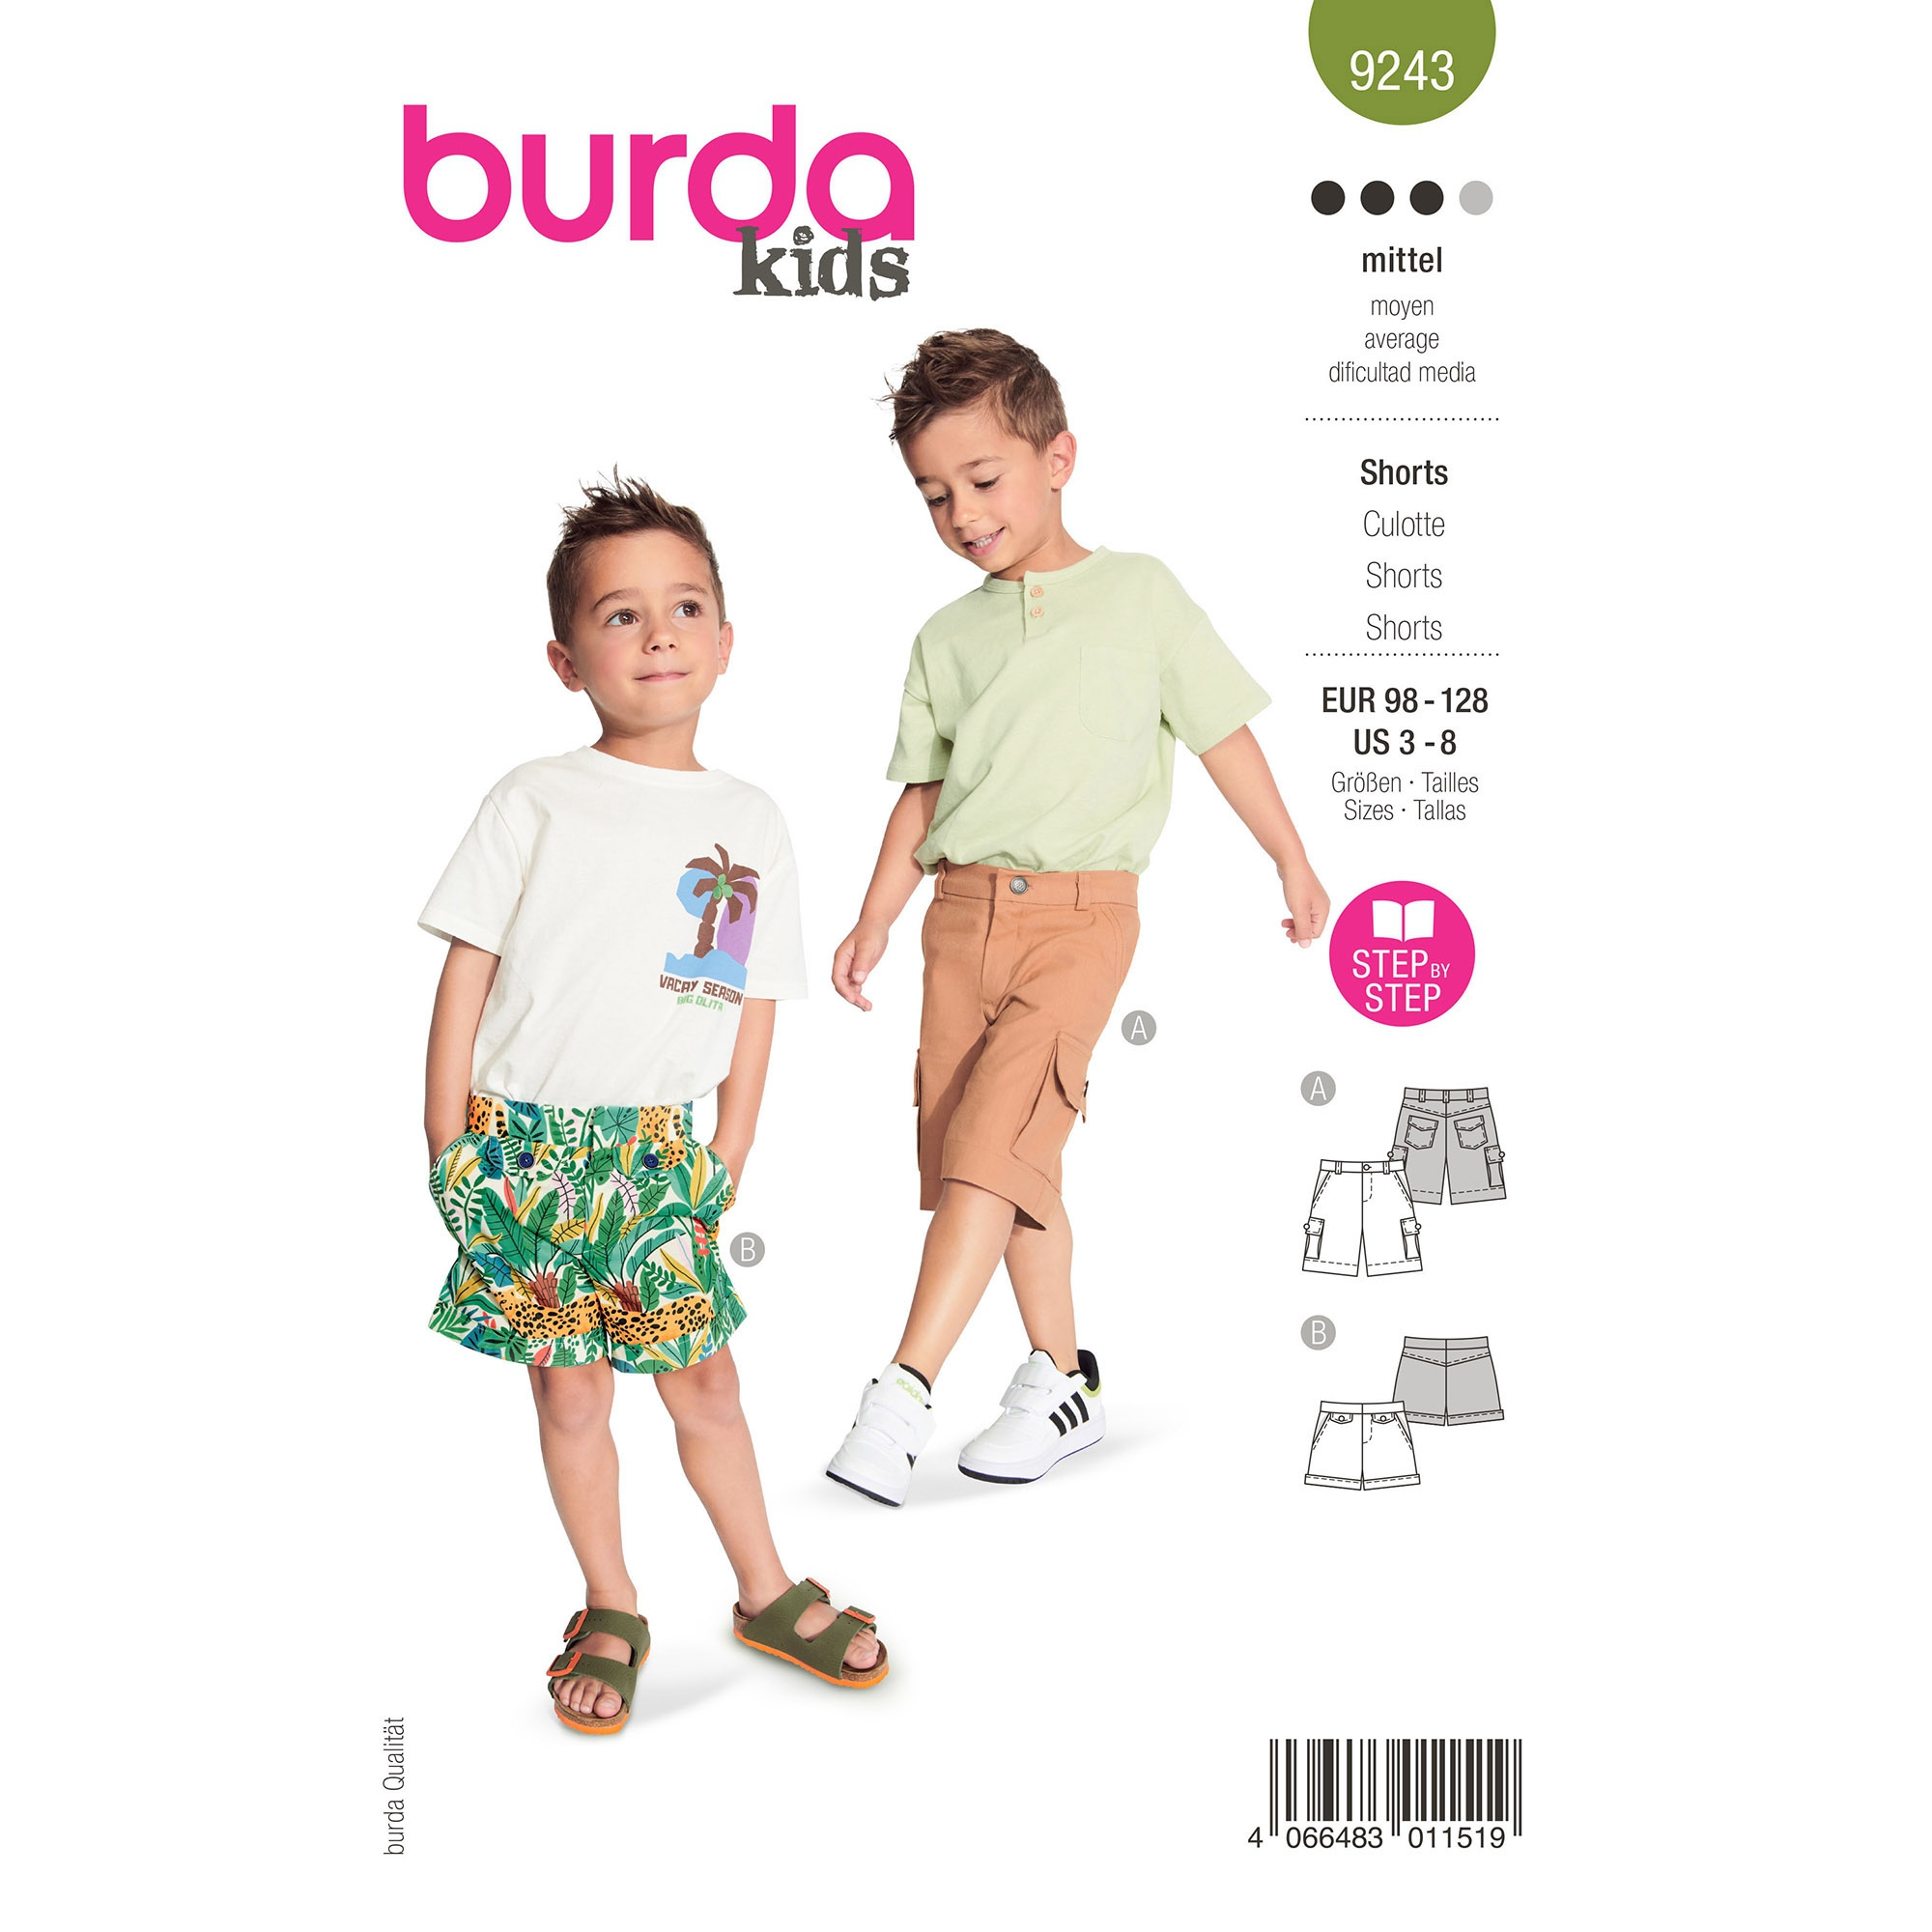 umoral reagere Født Sewing pattern shorts, Burda Kids 9243, En/Ger/Fr | Fabrics Hemmers